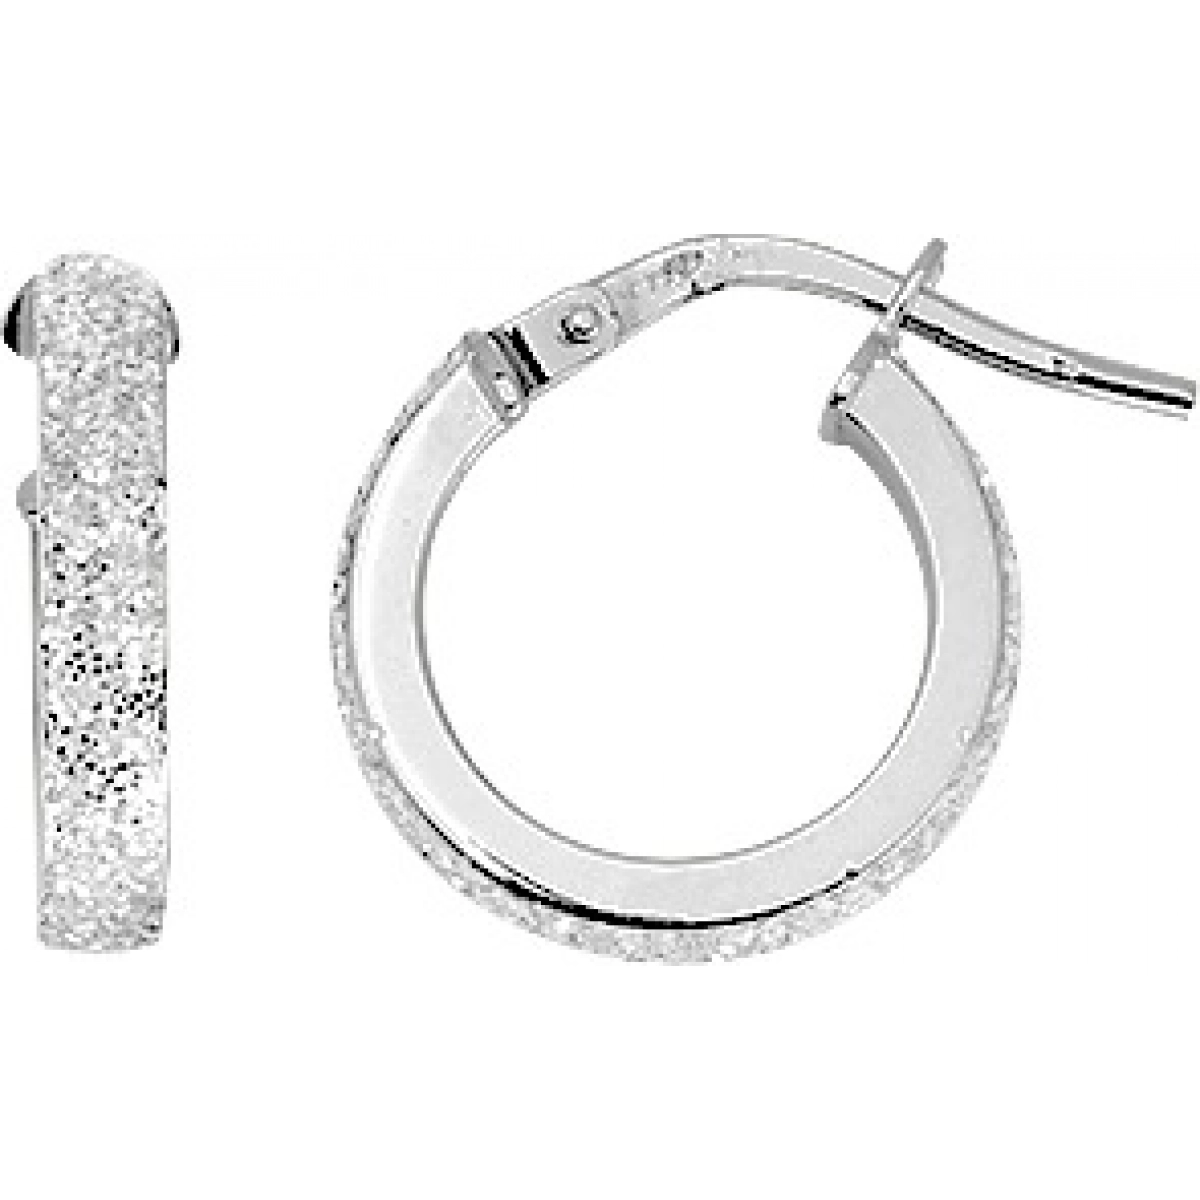 Hoops earrings pair w. glitter 9K YG Lua Blanca  9K3686GR.0